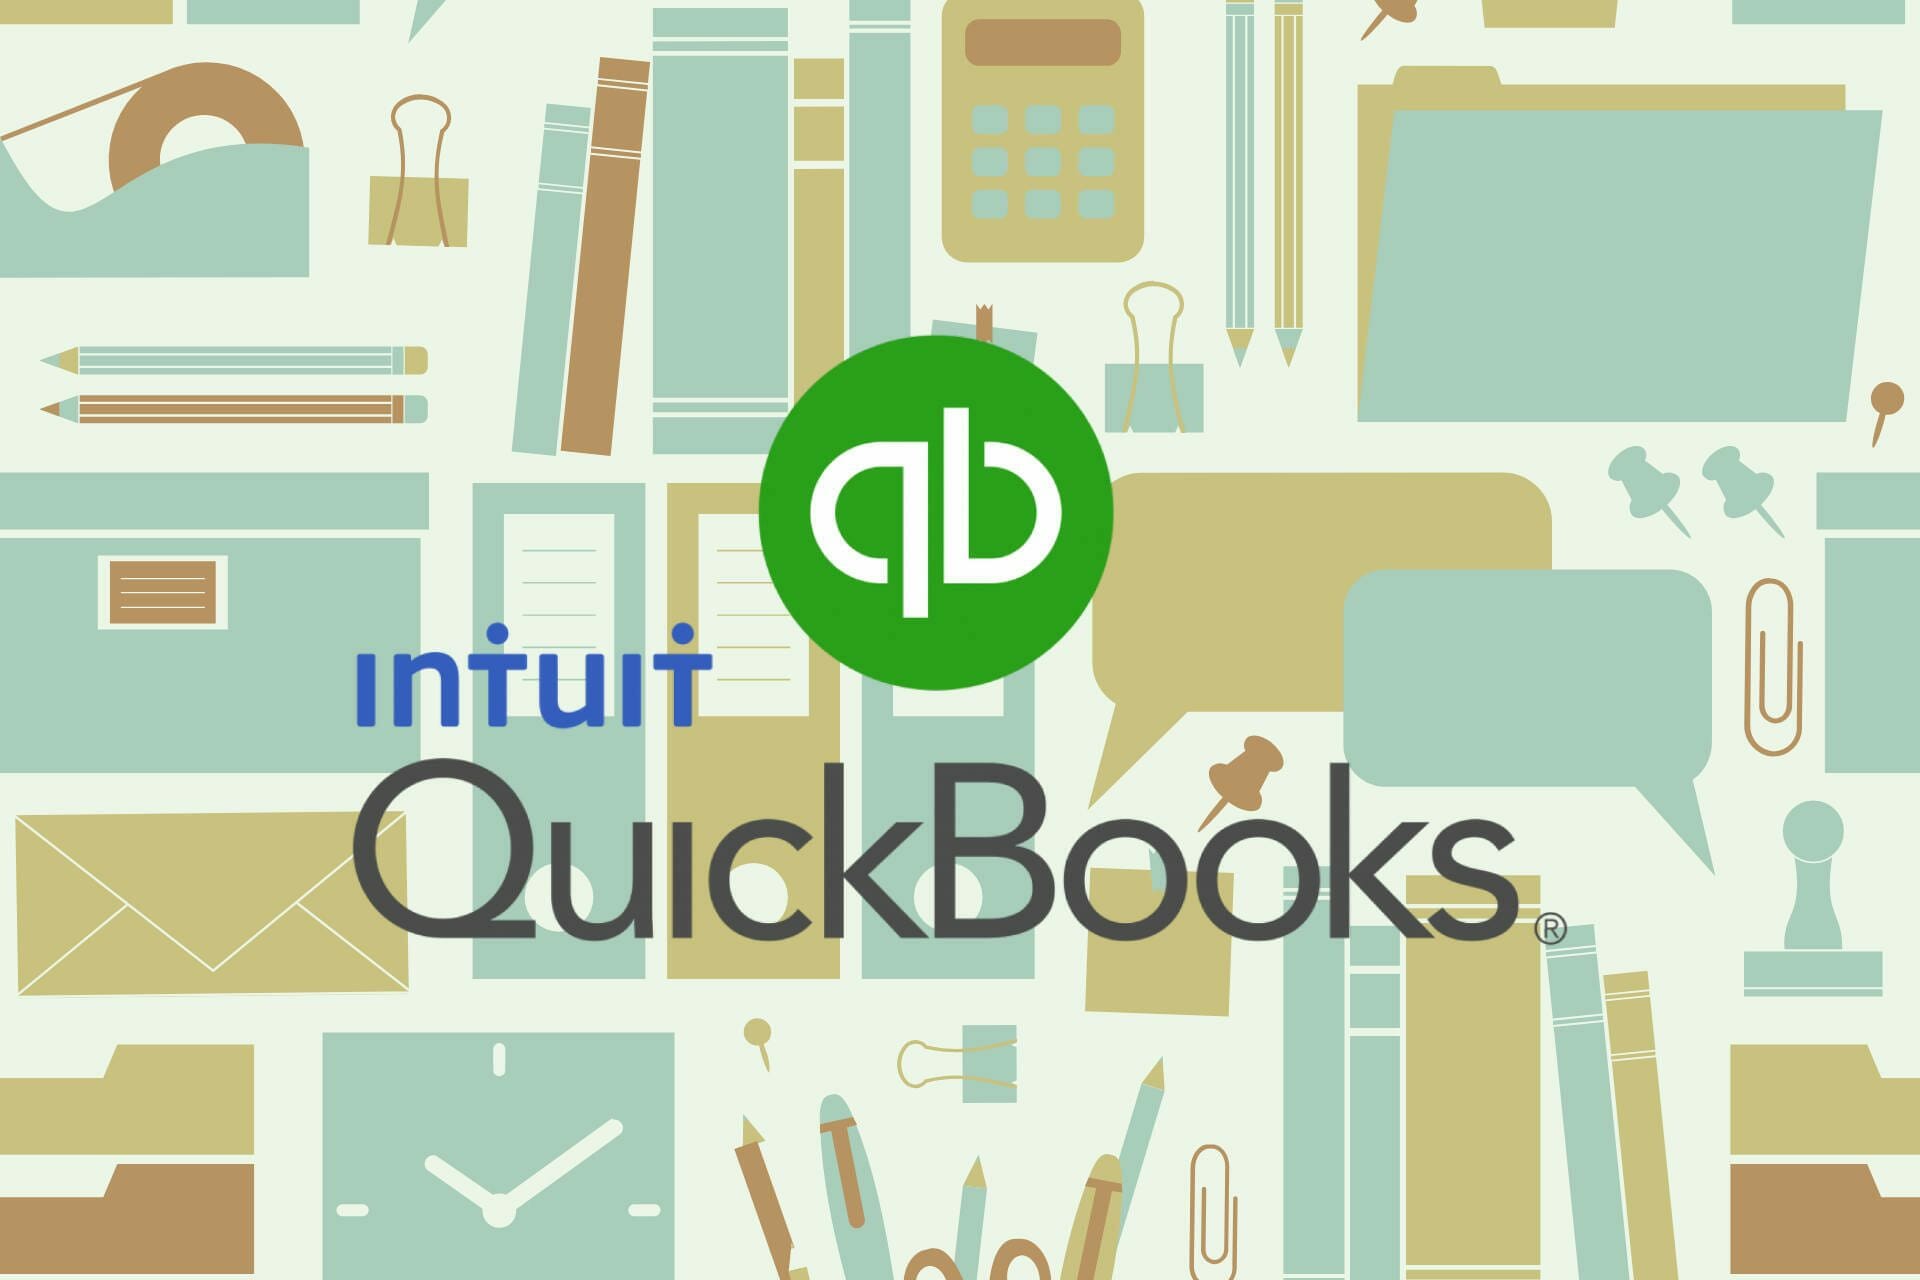 quickbooks online desktop app not working in windows 10